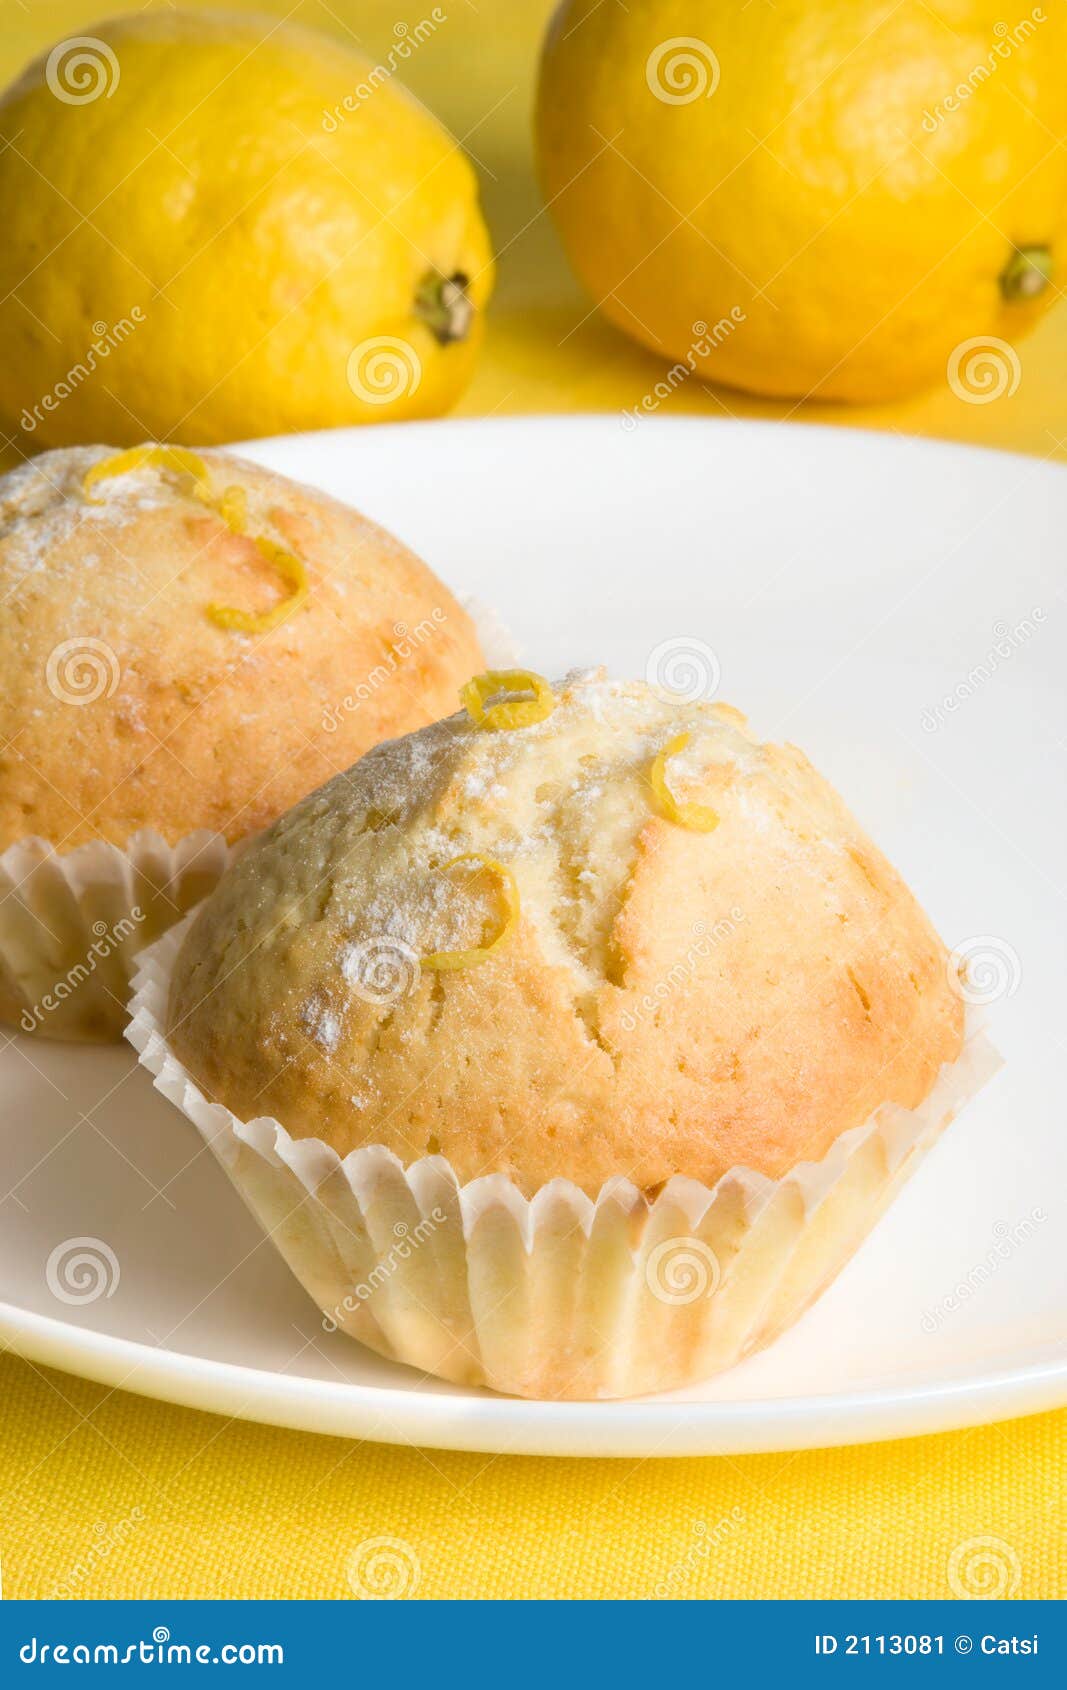 Lemon muffins on yellow